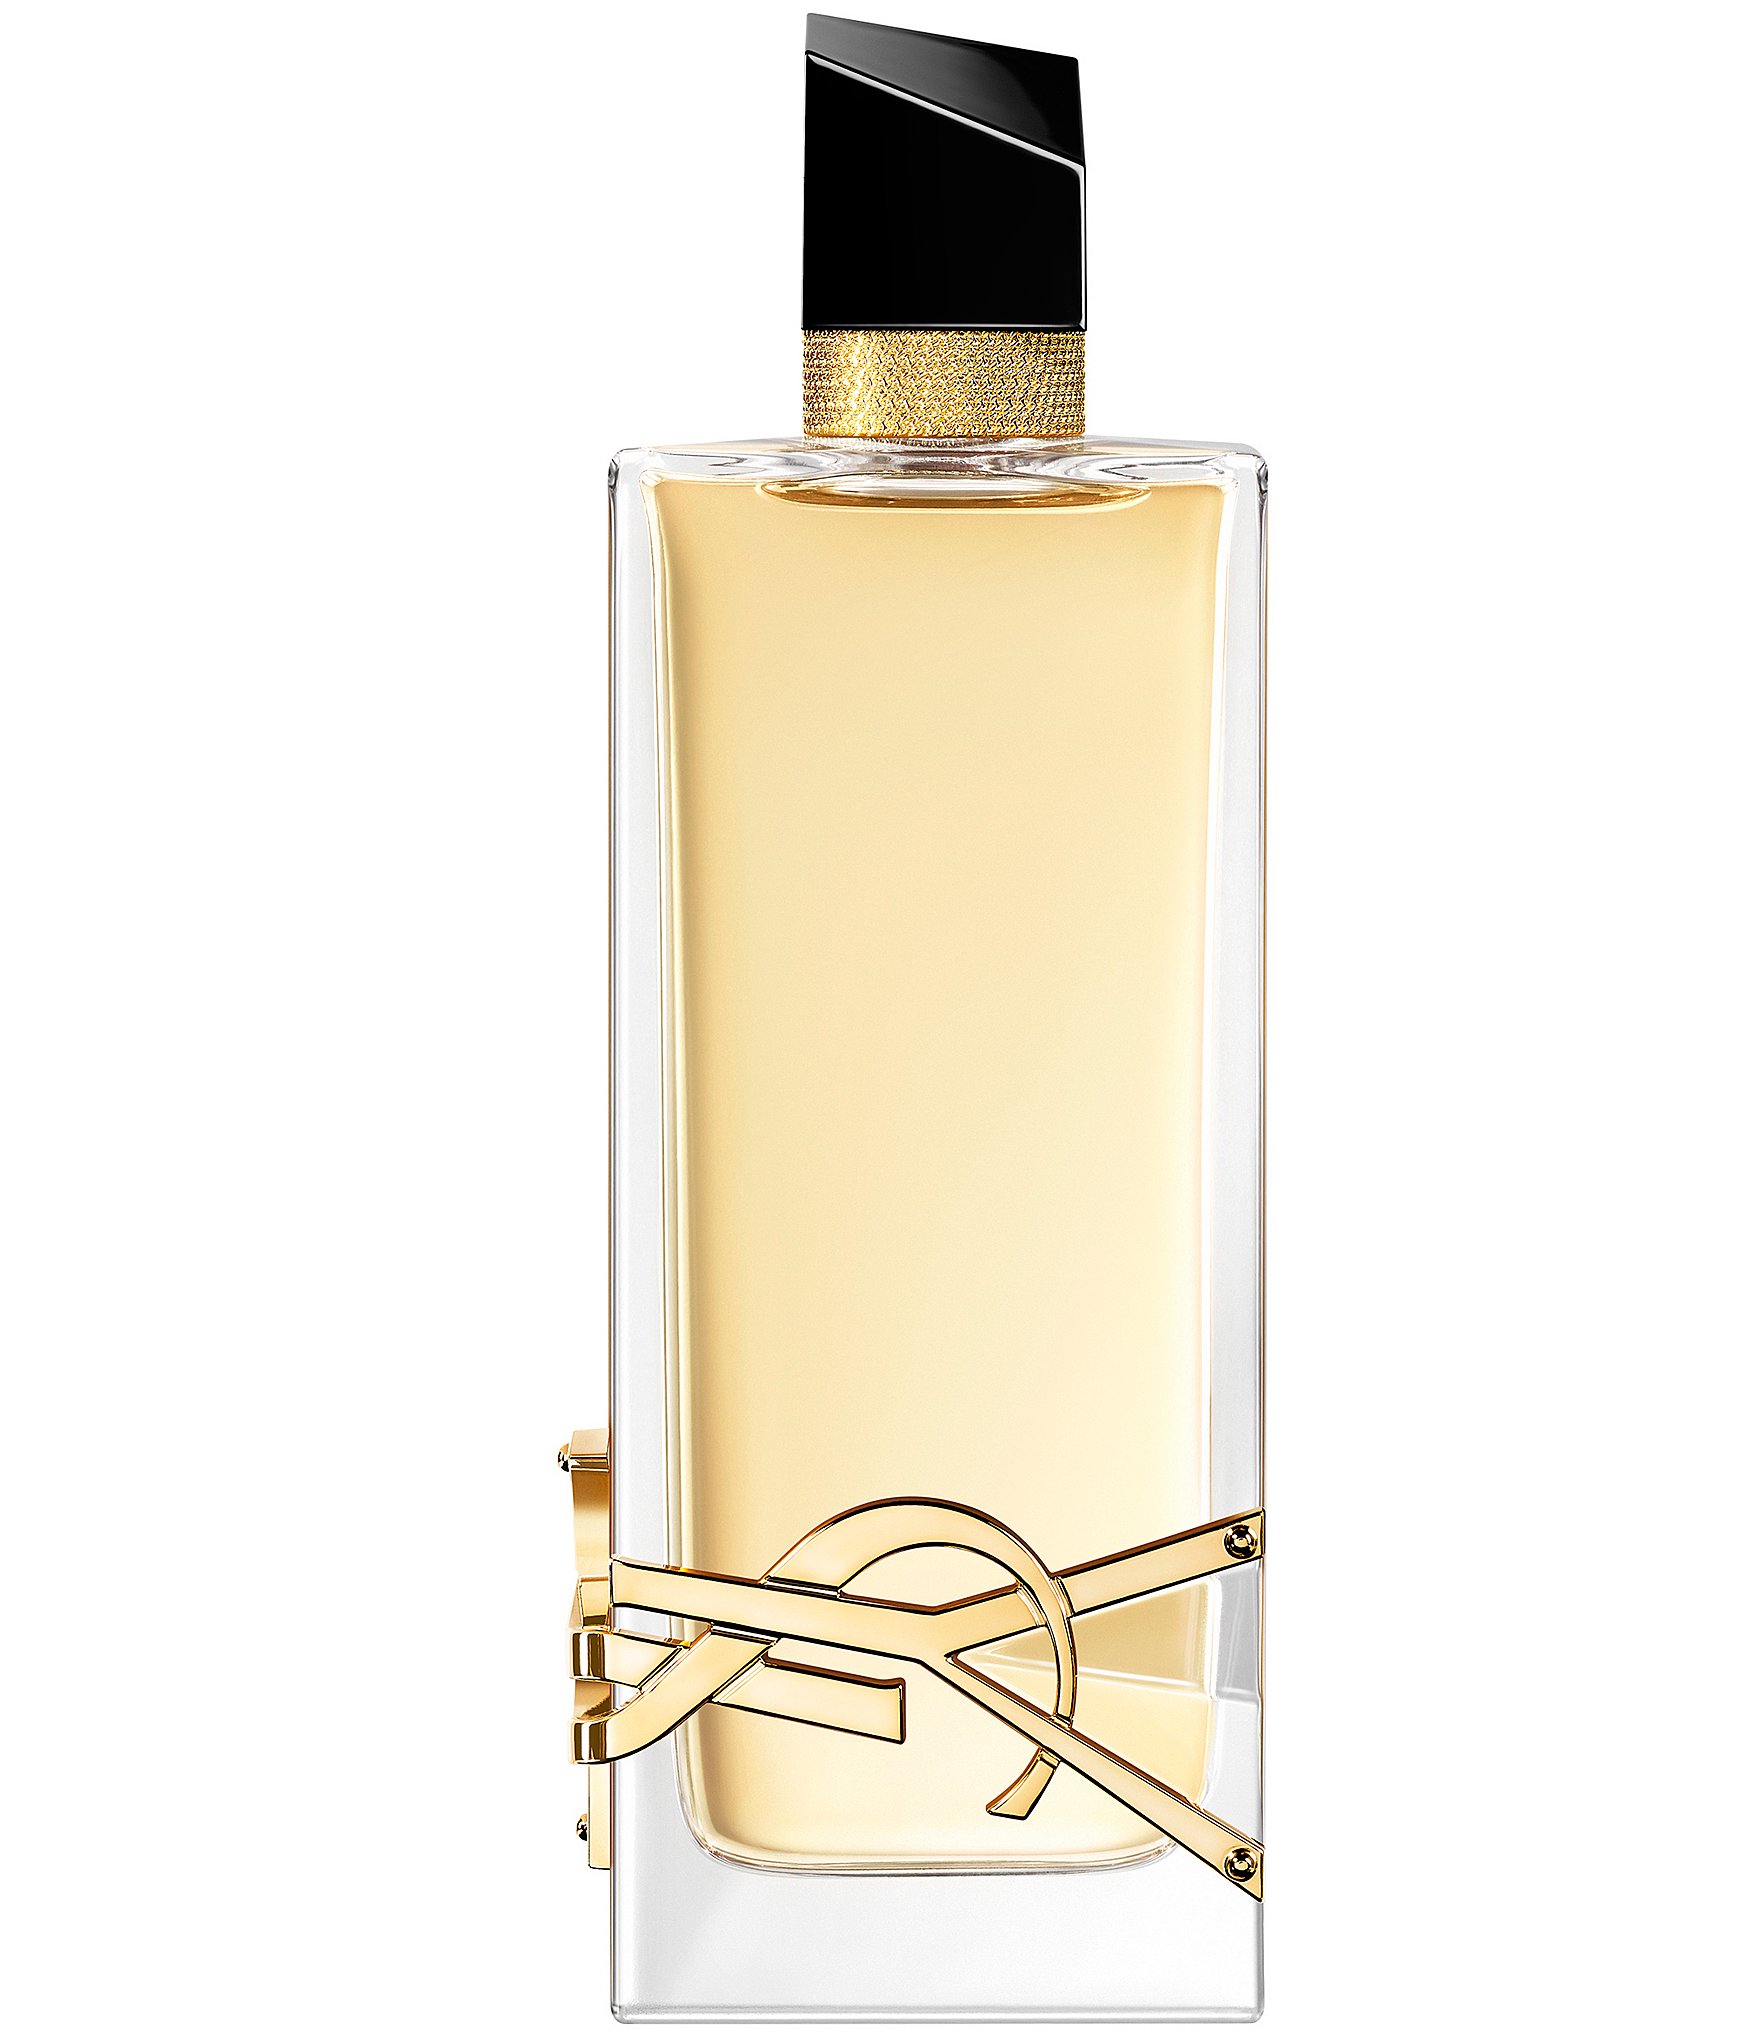 Yves Saint Laurent Ladies Libre Le Parfum EDP Spray 1.6 oz Fragrances  3614273776110 - Fragrances & Beauty, Libre Le Parfum - Jomashop